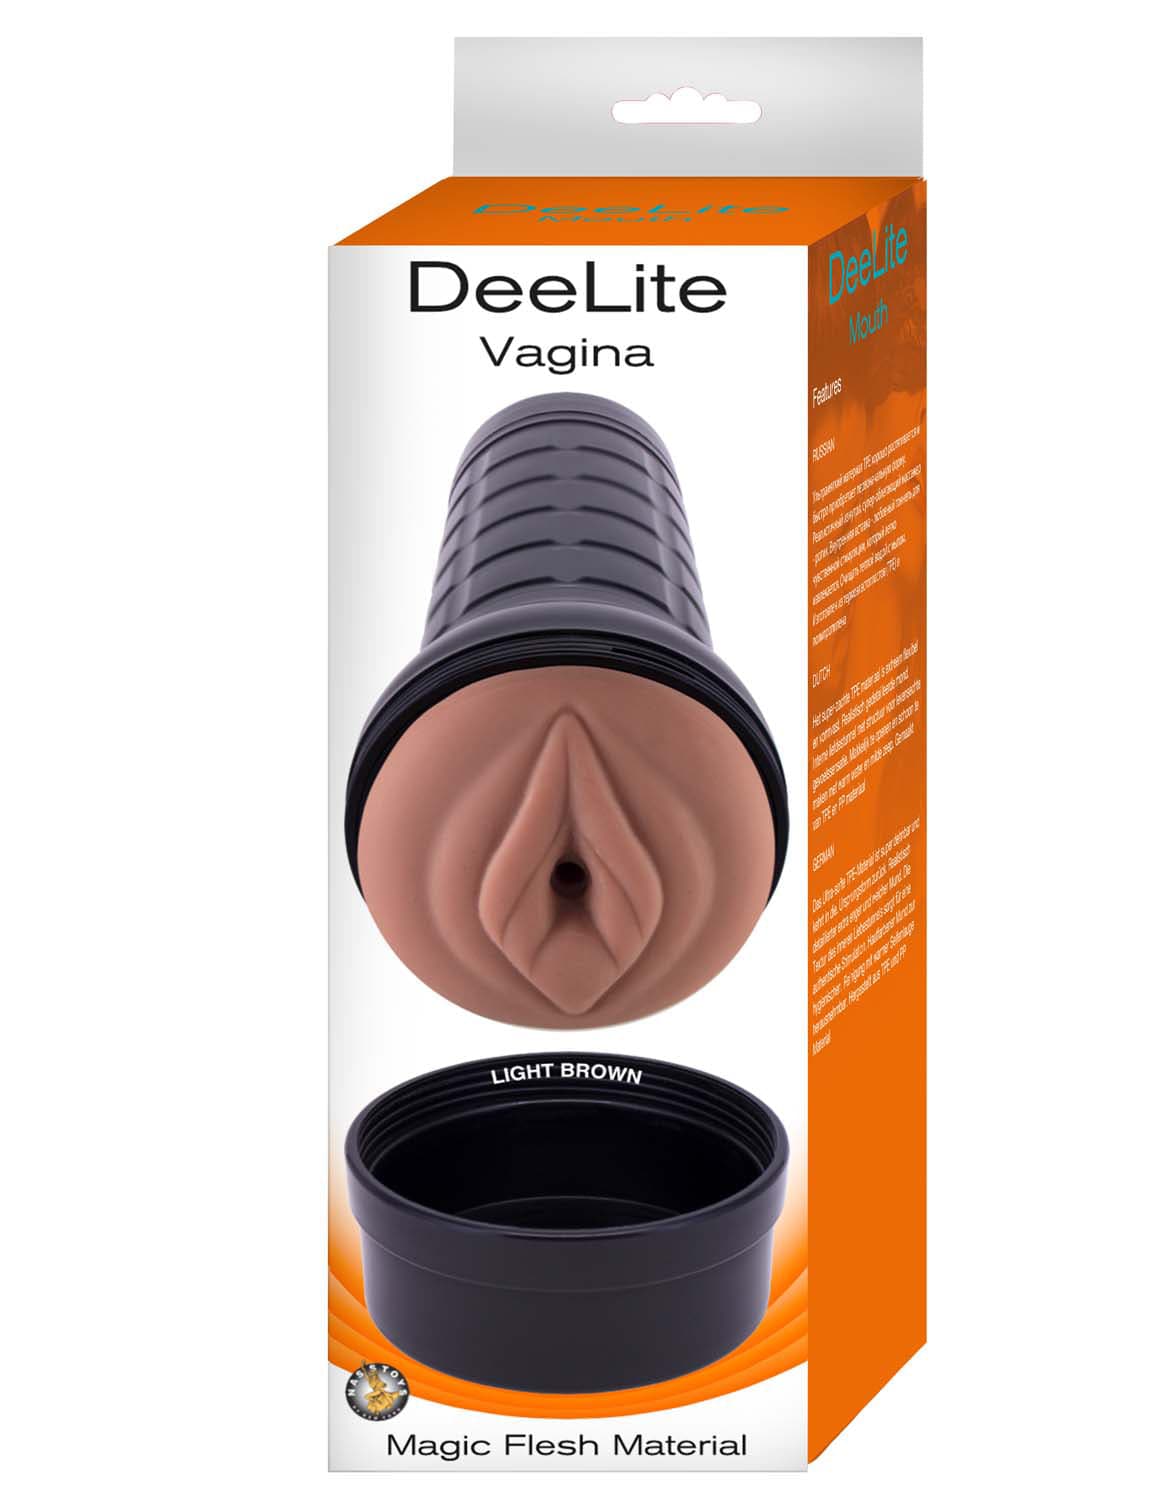 deelite vagina light brown